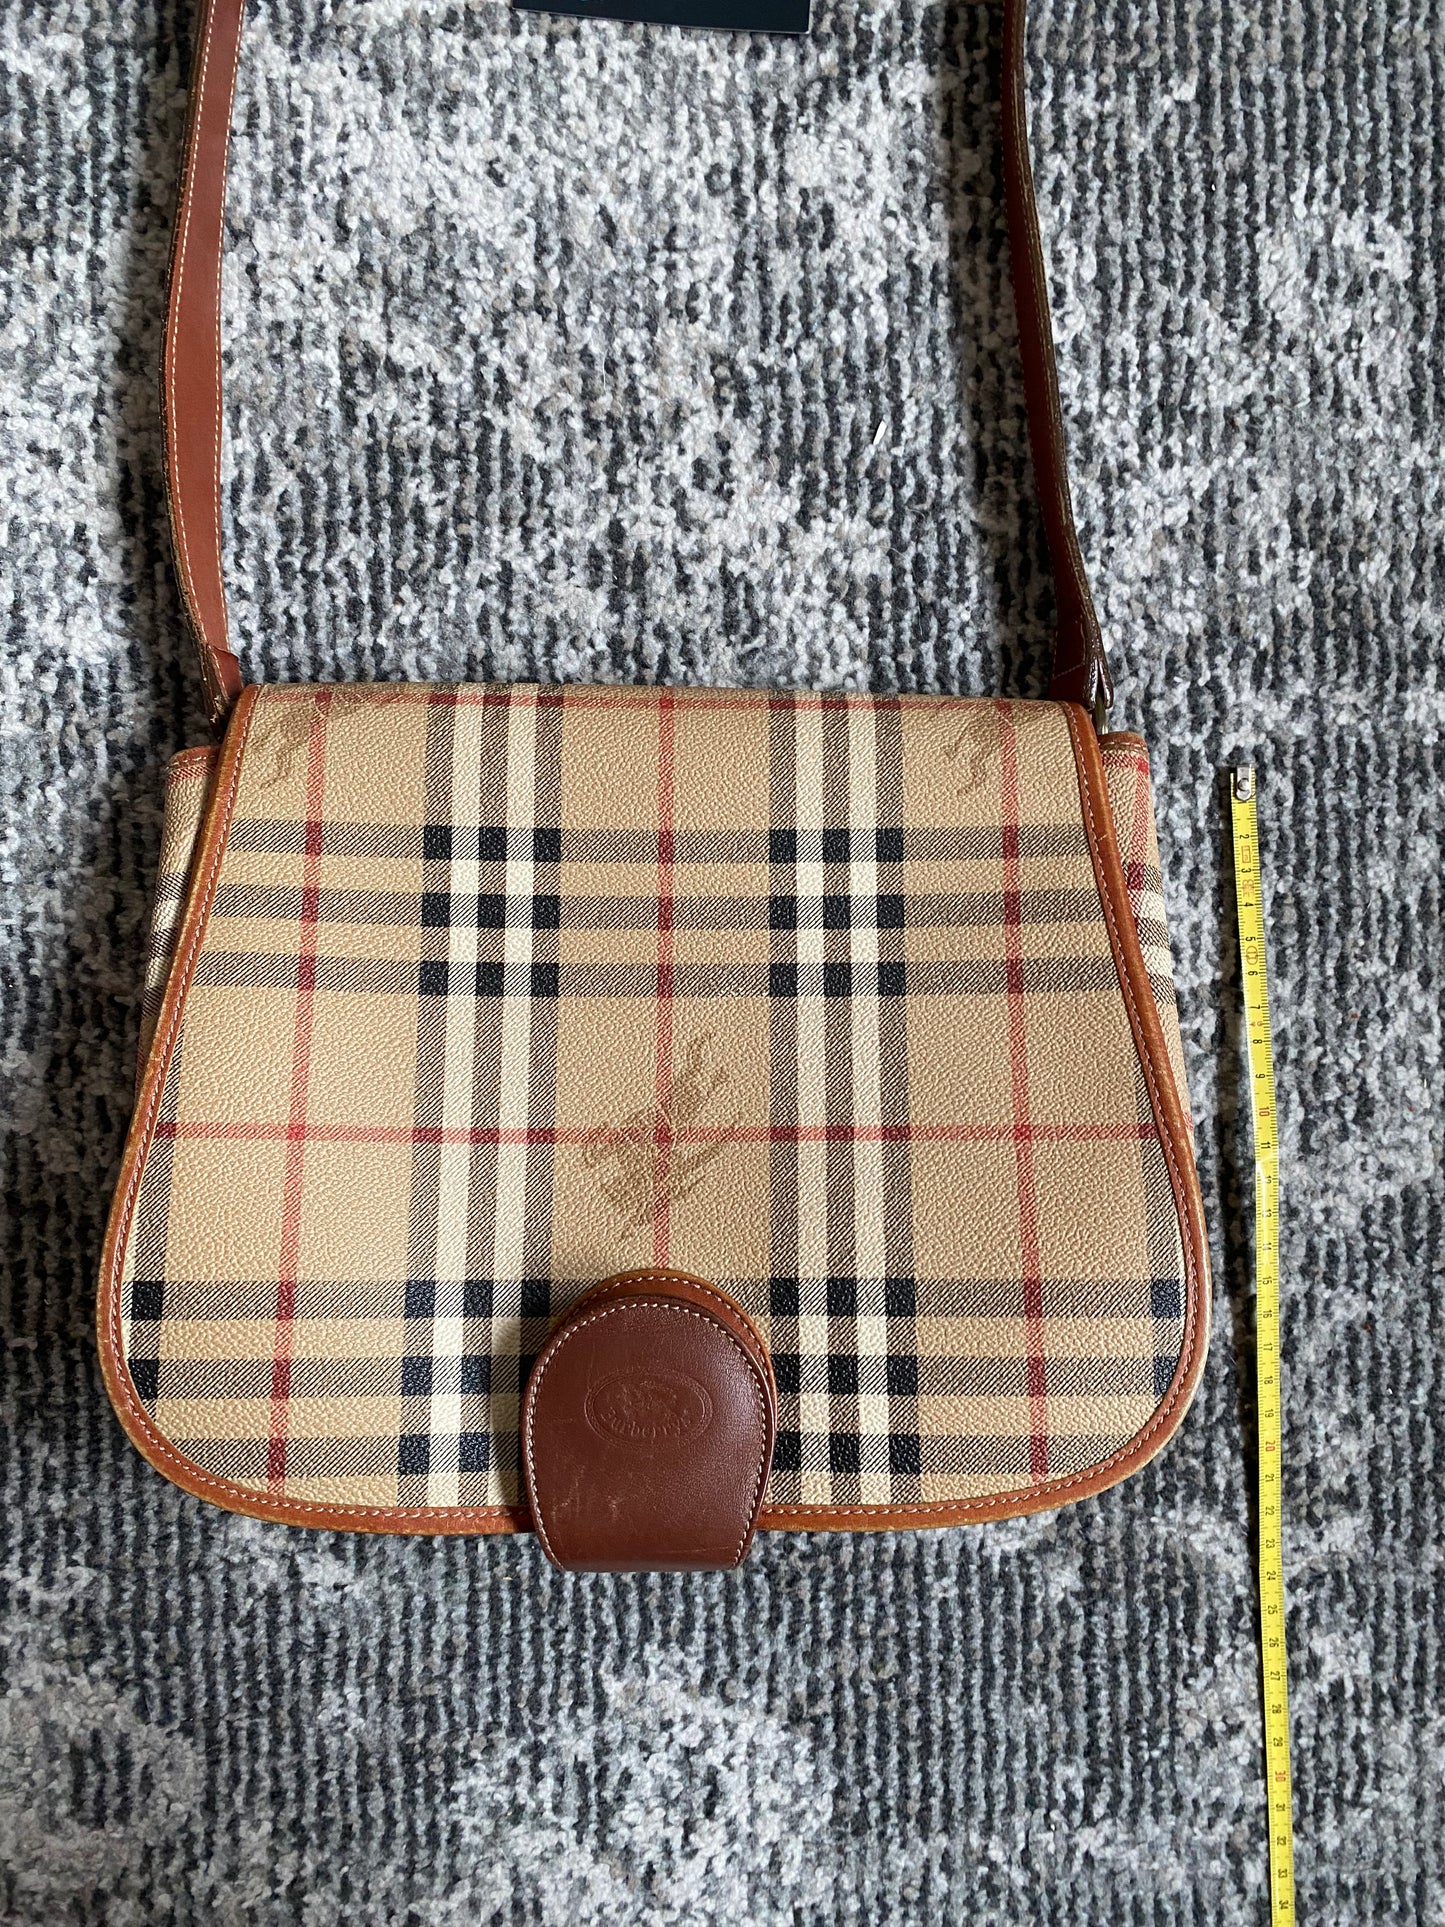 Burberry Messenger Bag